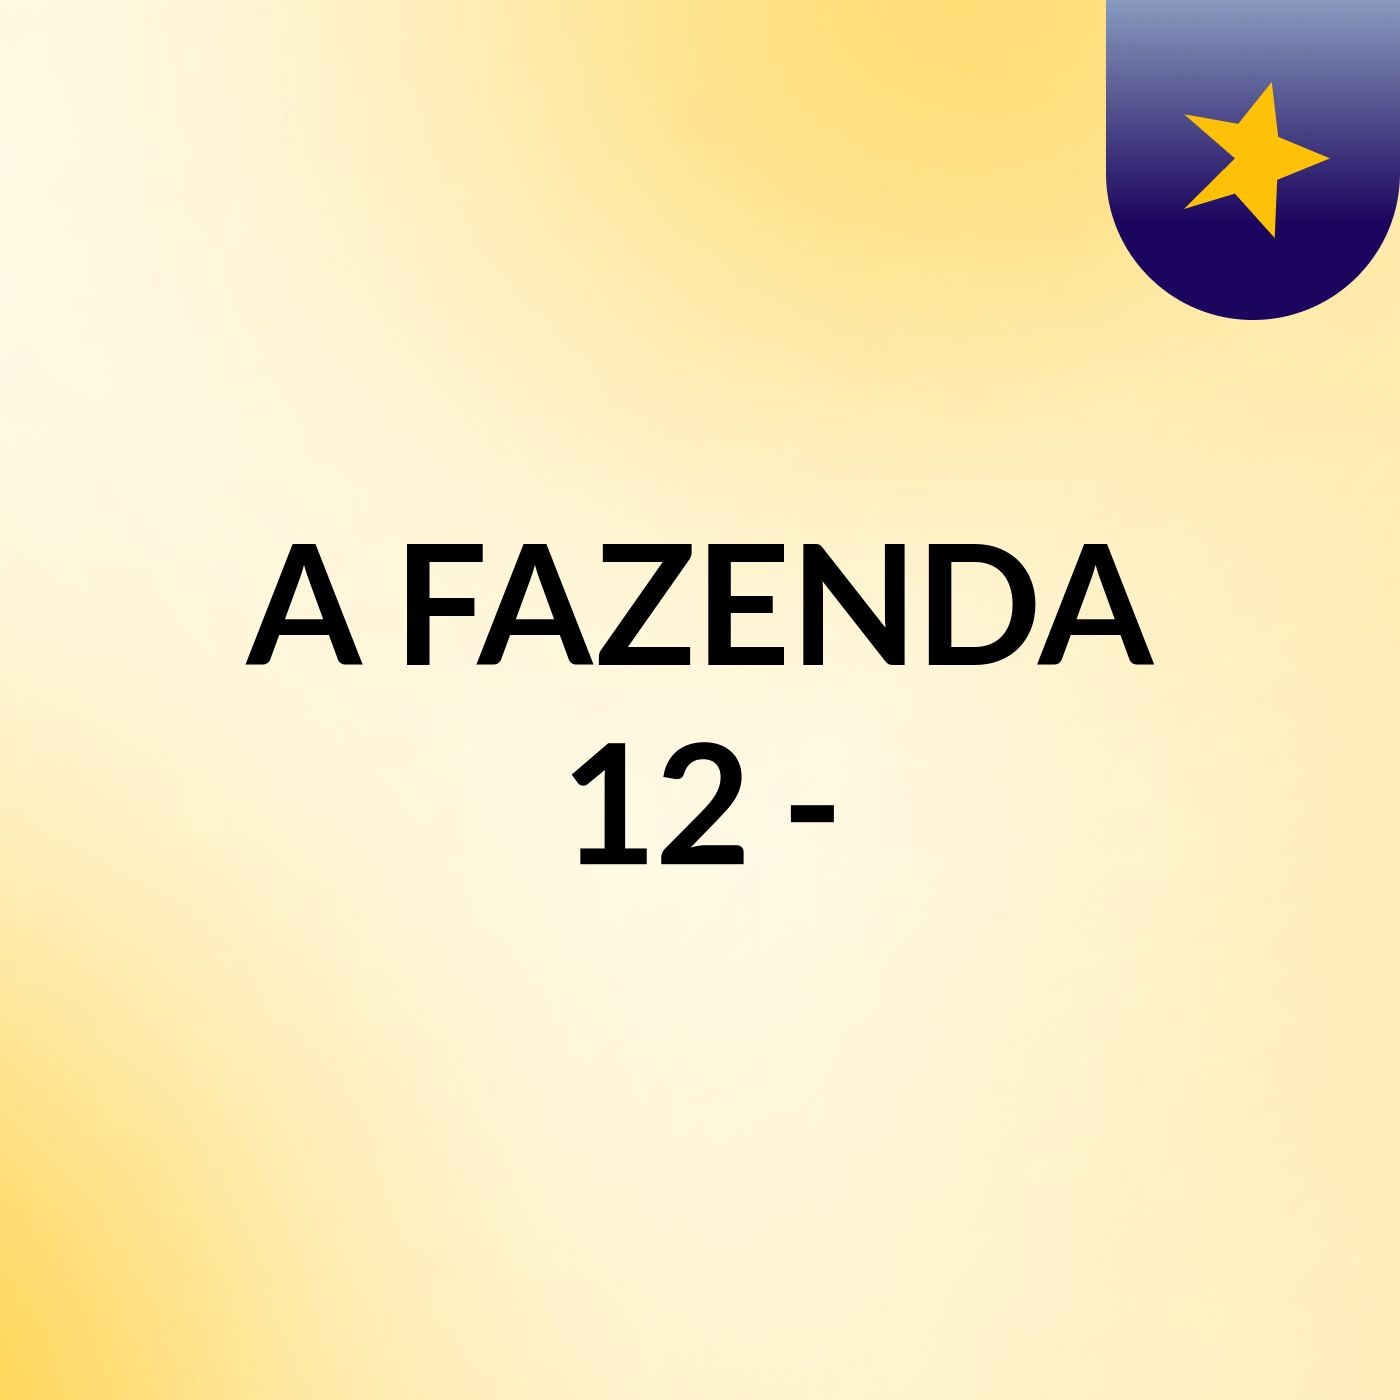 A FAZENDA 12 -